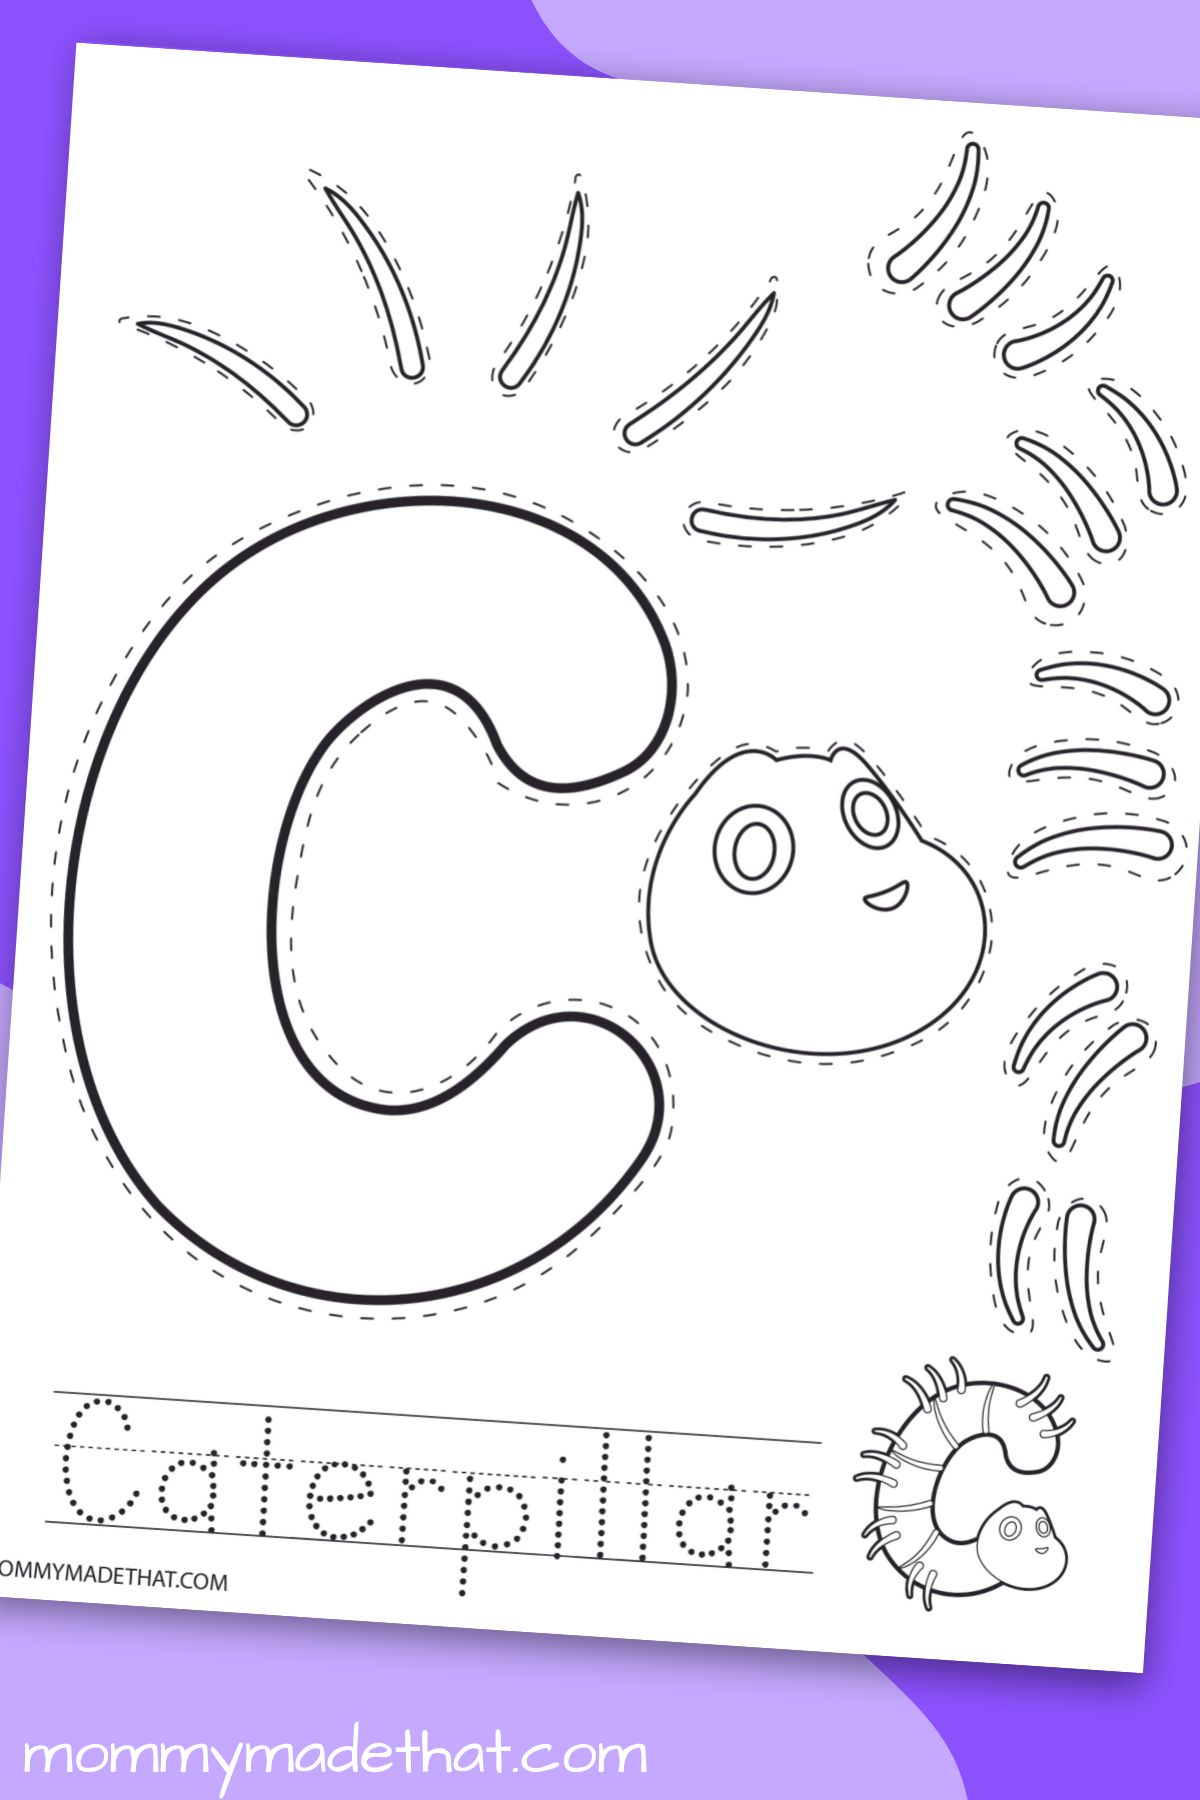 c is for caterpillar craft